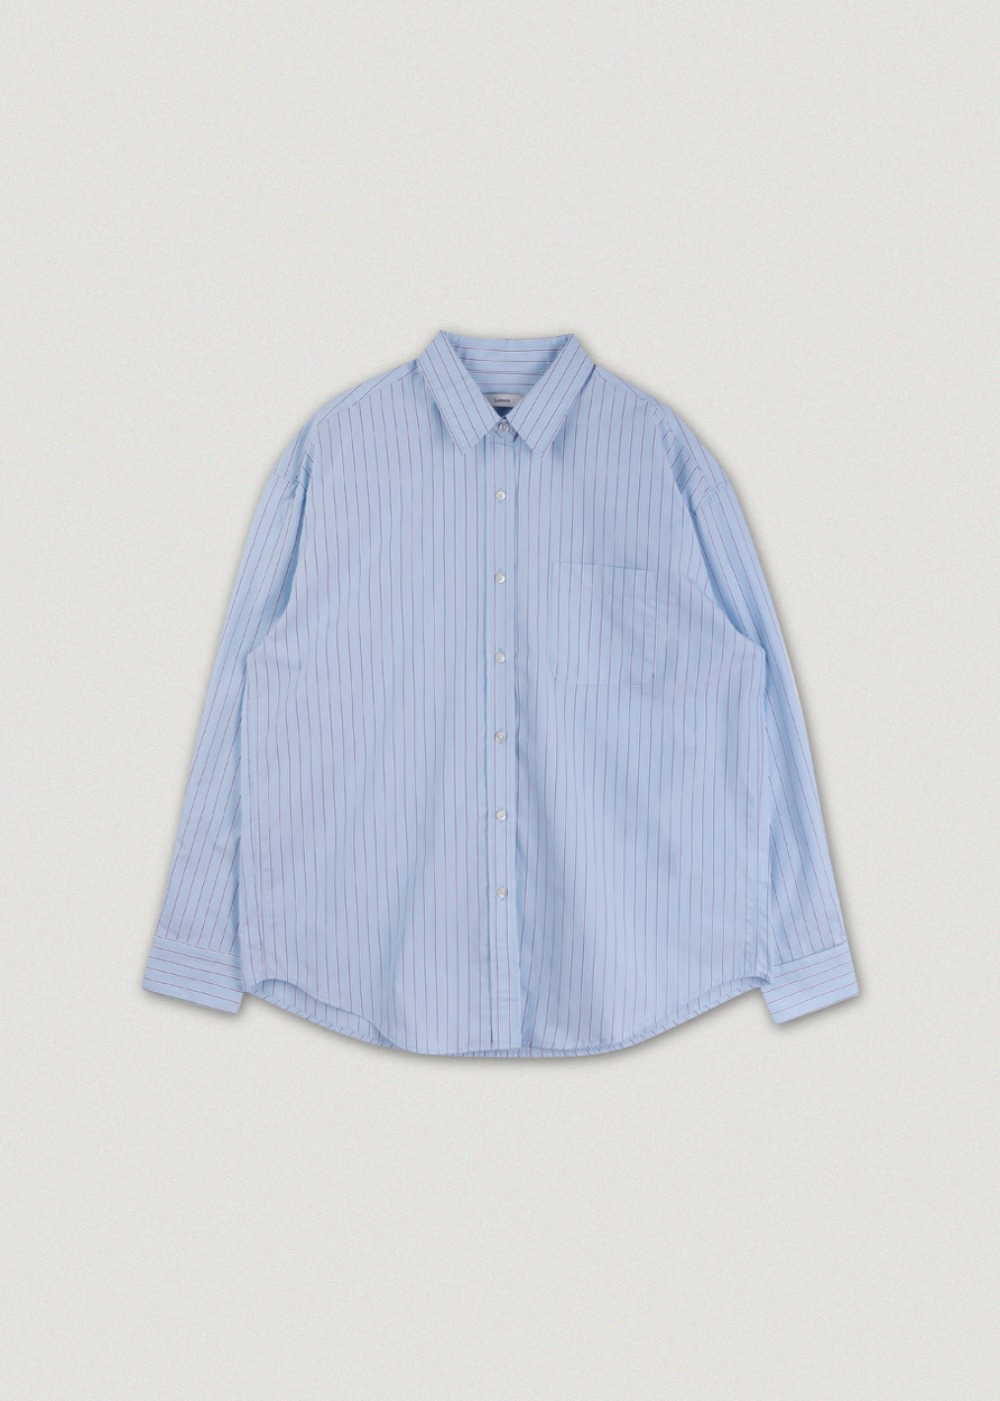 Mori Stripe Shirt - Sky blue